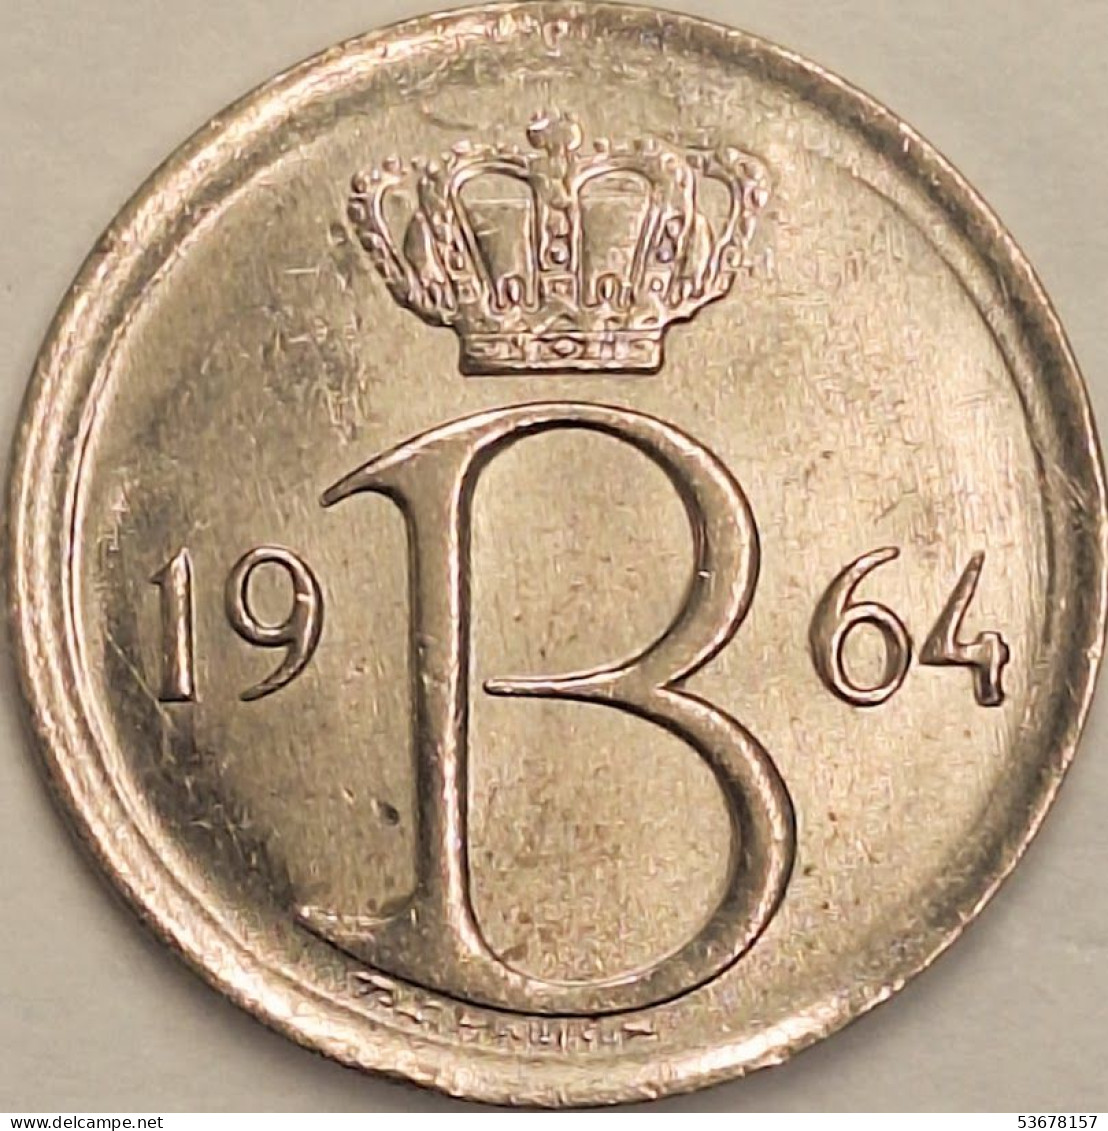 Belgium - 25 Centimes 1964, KM# 154.1 (#3082) - 25 Cents